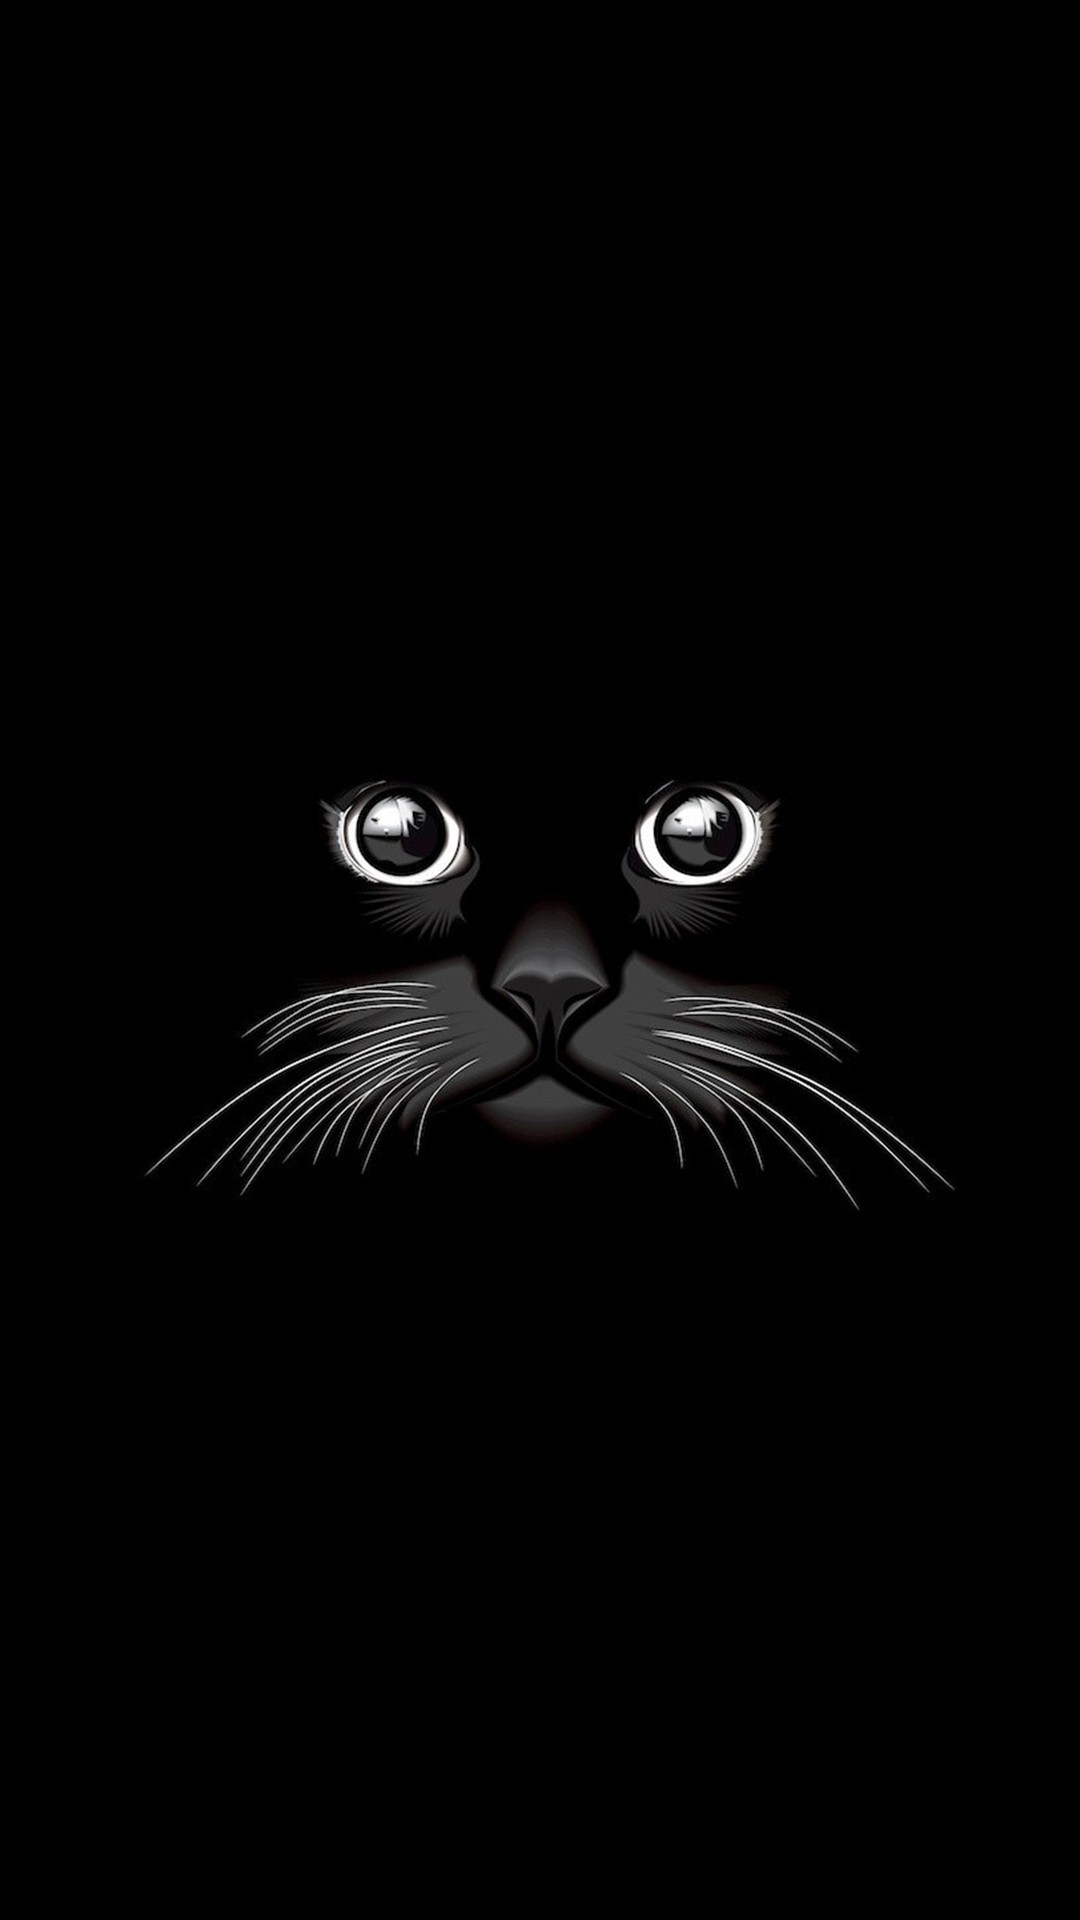 1080x1920 Cartoon Wallpaper, Black Cat Art, Black Cats, Phone Wallpapers, Image,  Telephone, Owl, Manualidades, Drawings